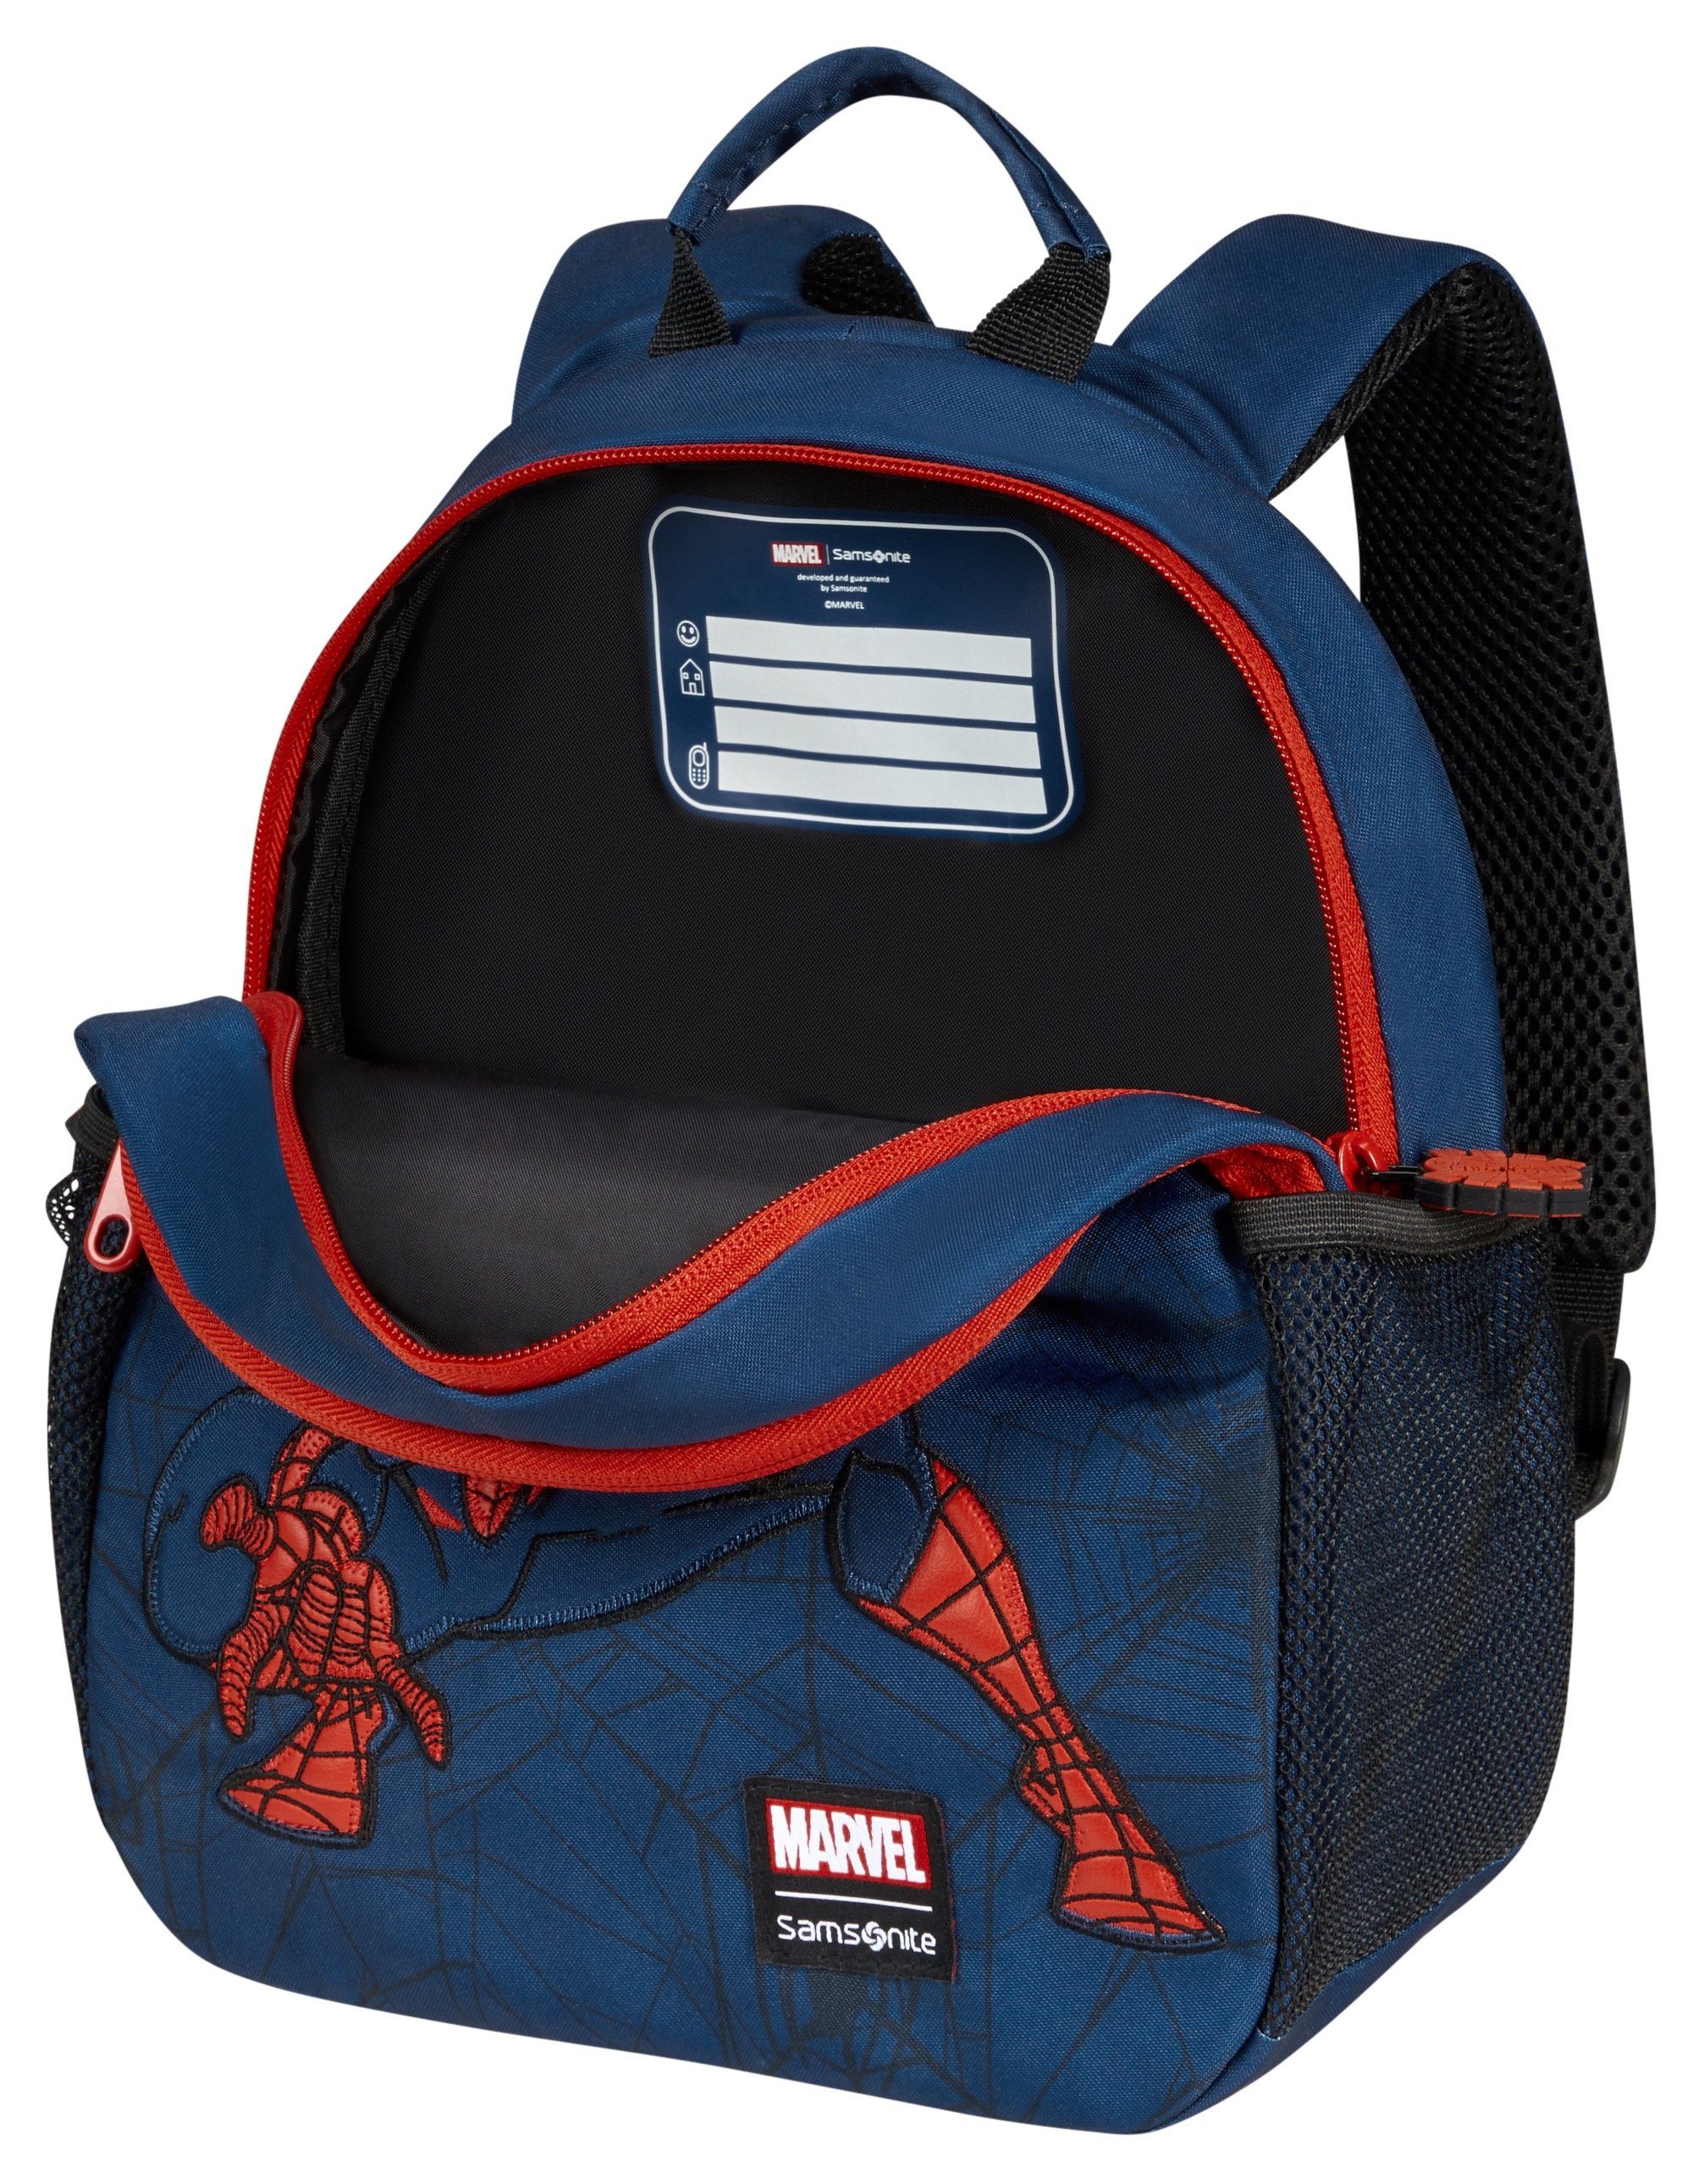 Disney Spiderman Ultimate Material web, Marvel recyceltem aus 2.0 Samsonite S BP Kinderrucksack